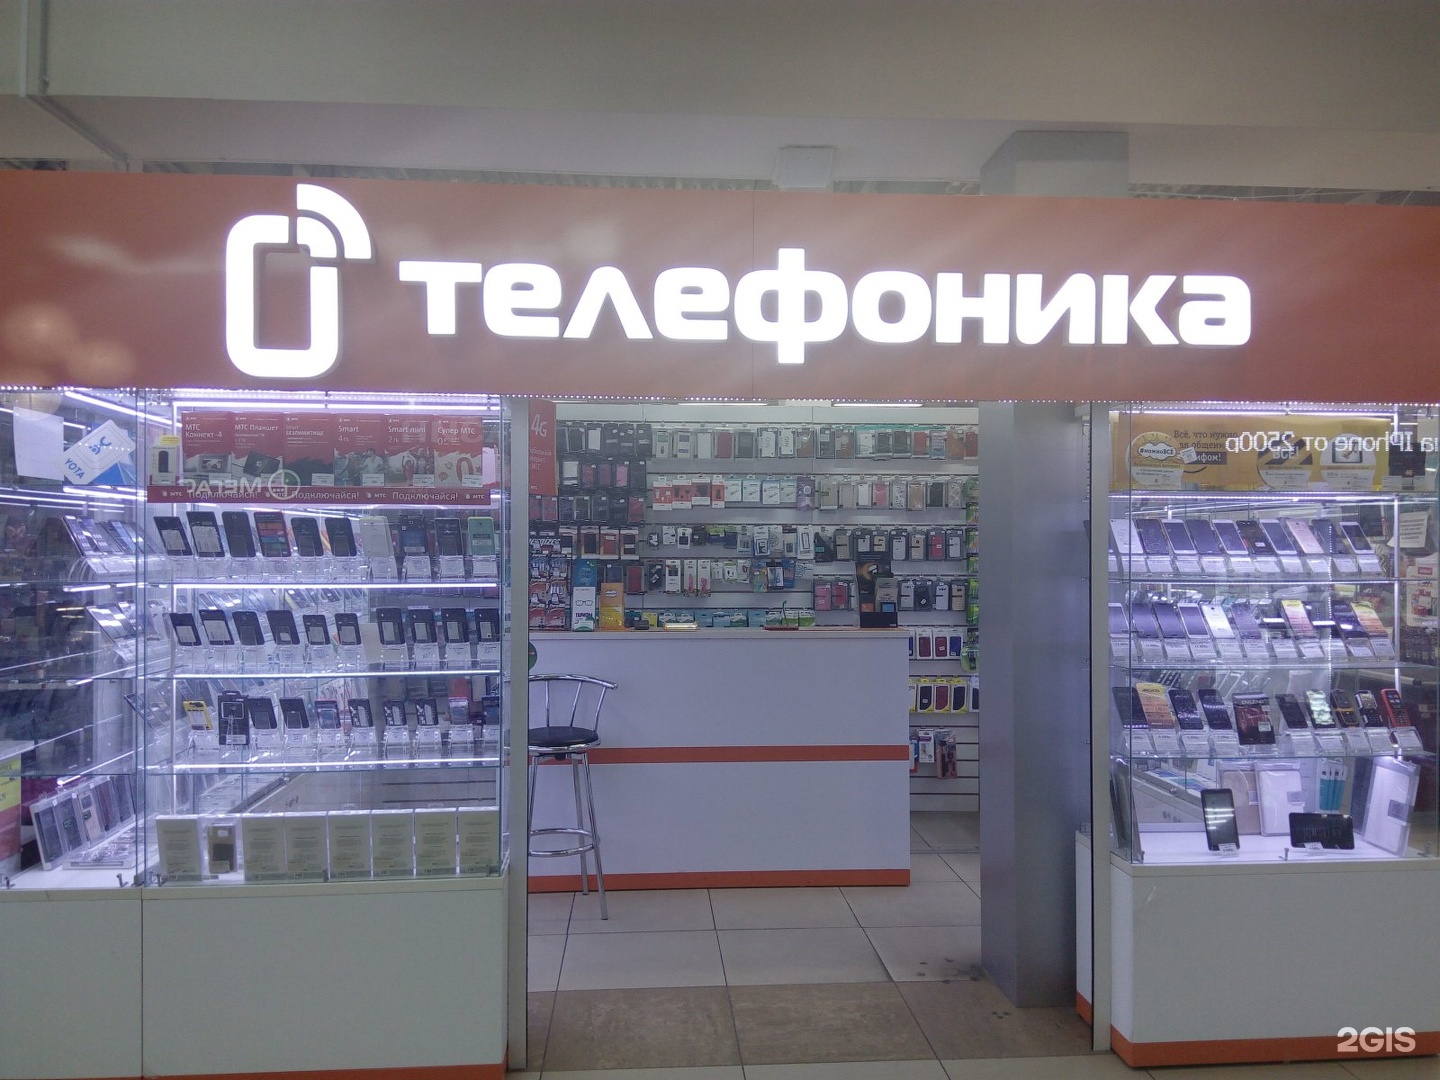 Интернет Магазины В Барнауле Список Лучших